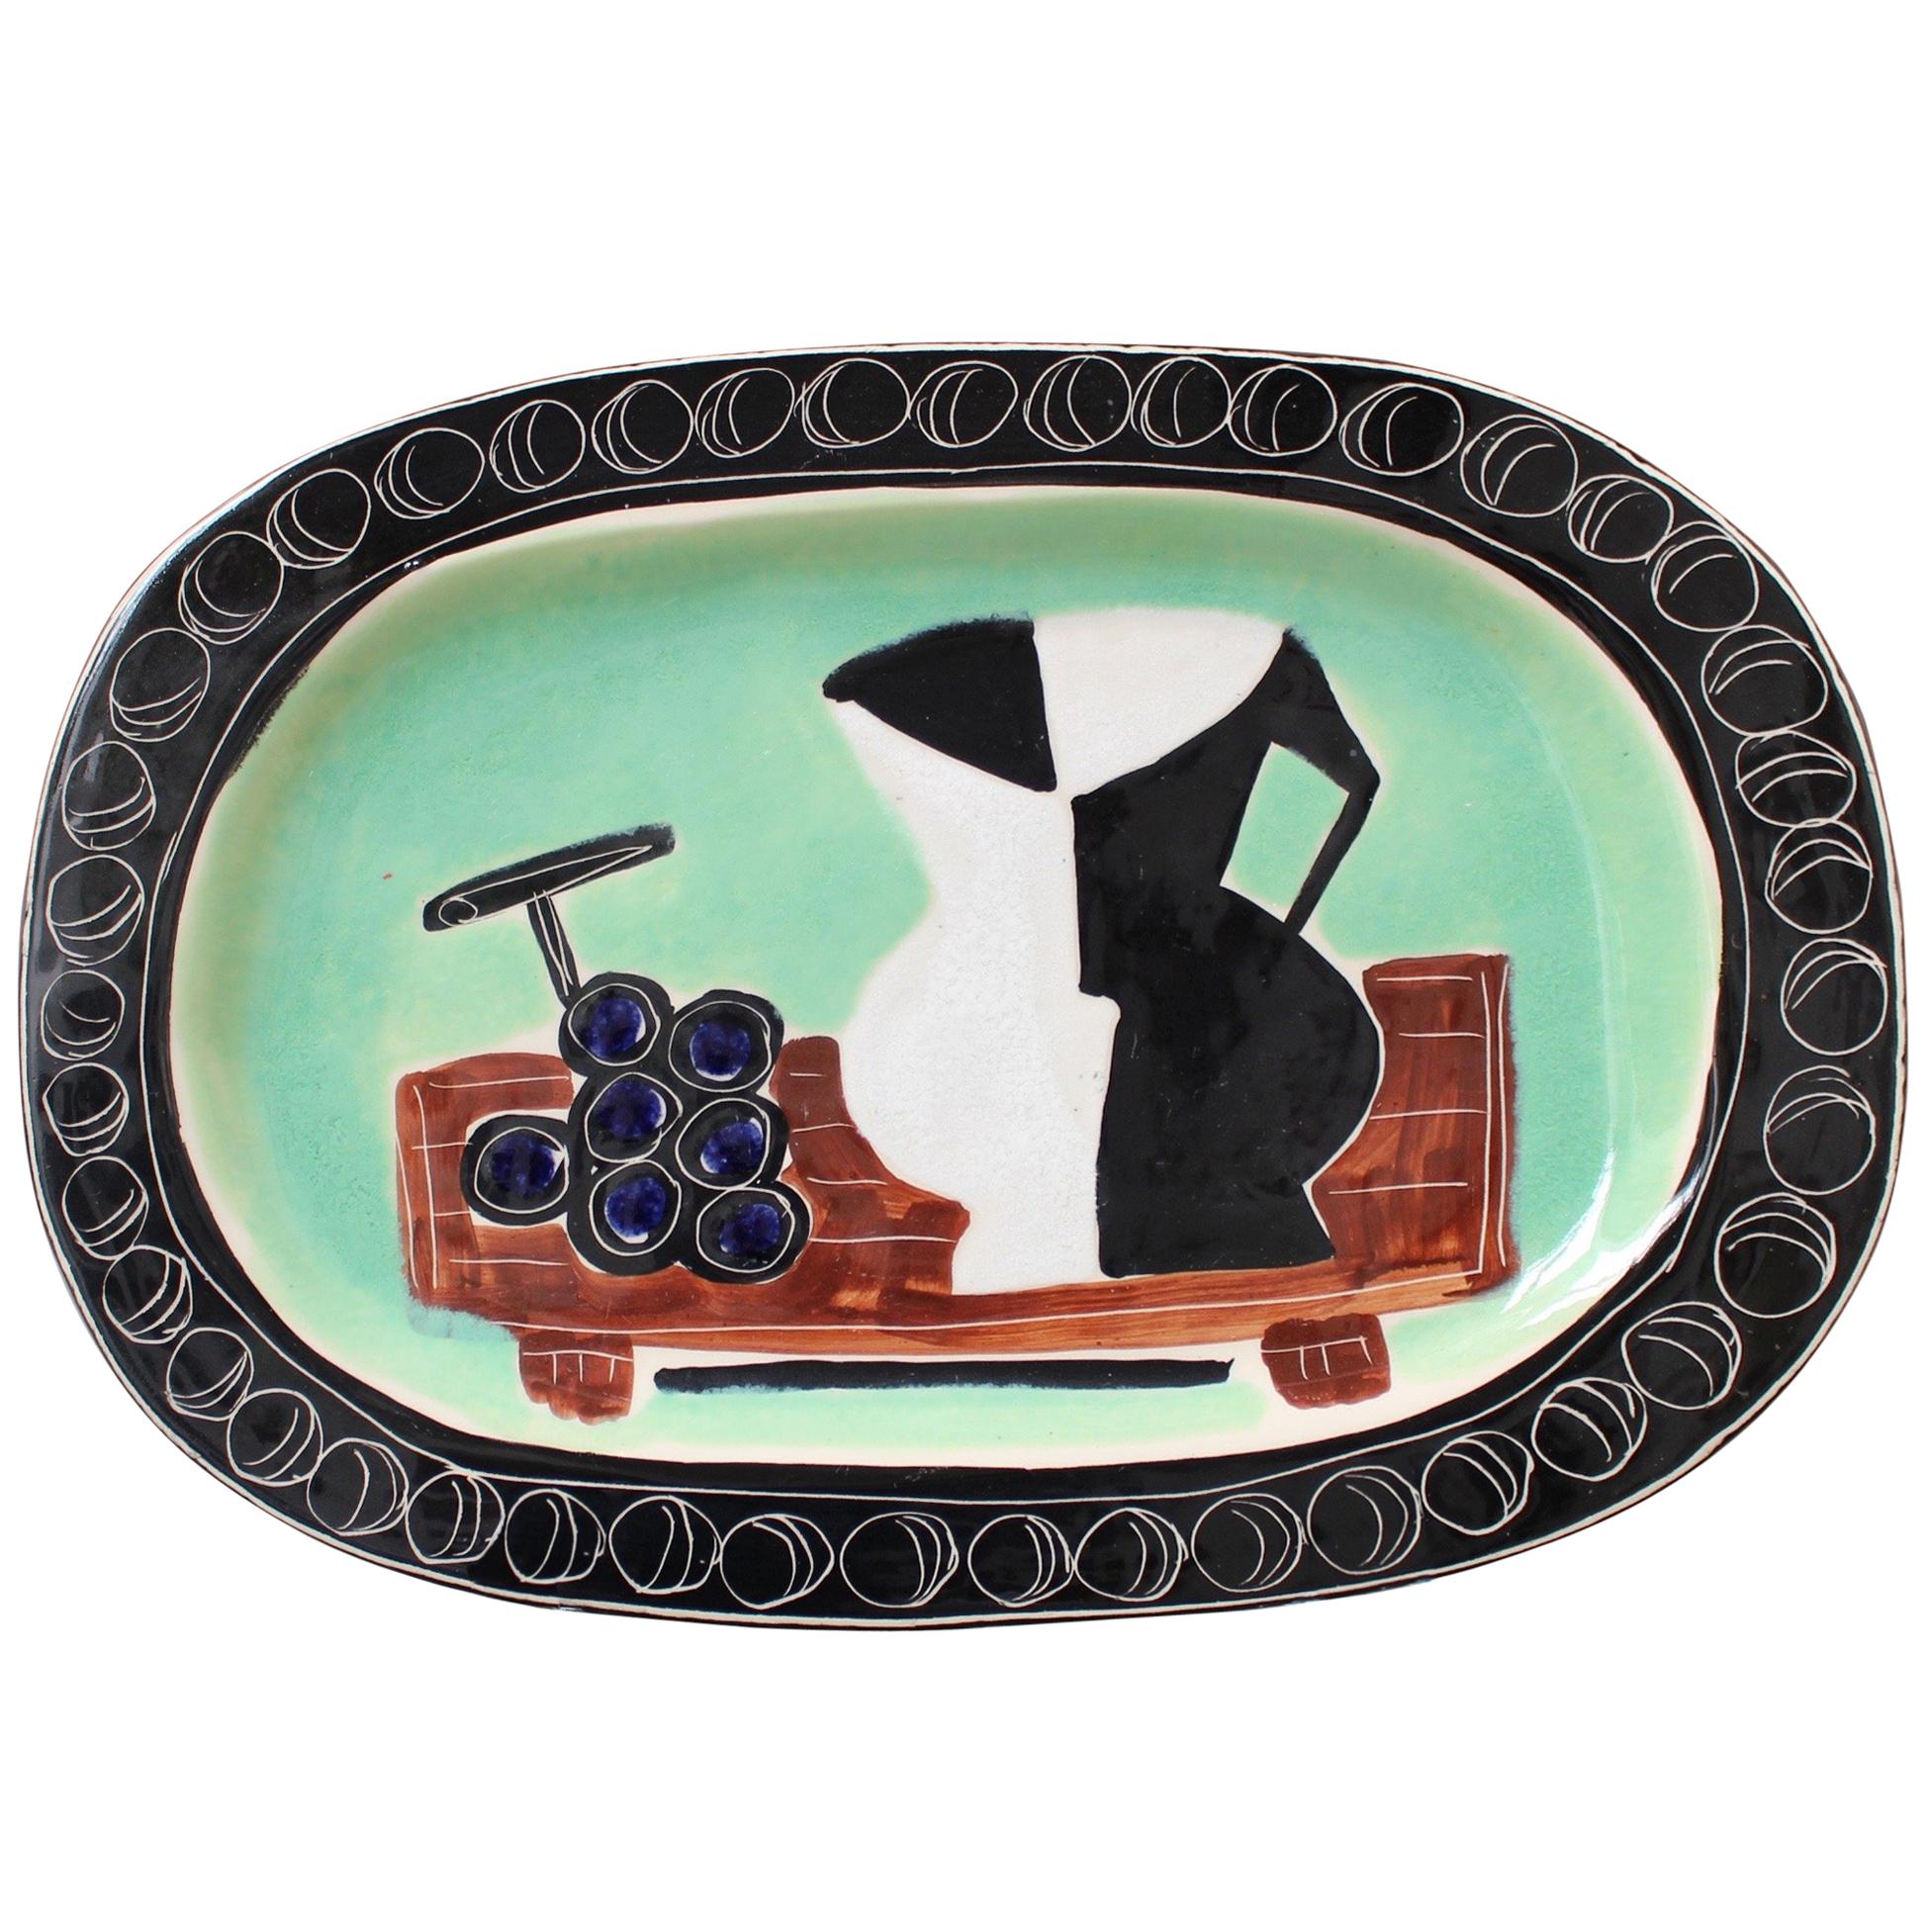 Poet-Laval Decorative Ceramic Platter by Jacques Pouchain, France circa 1950s